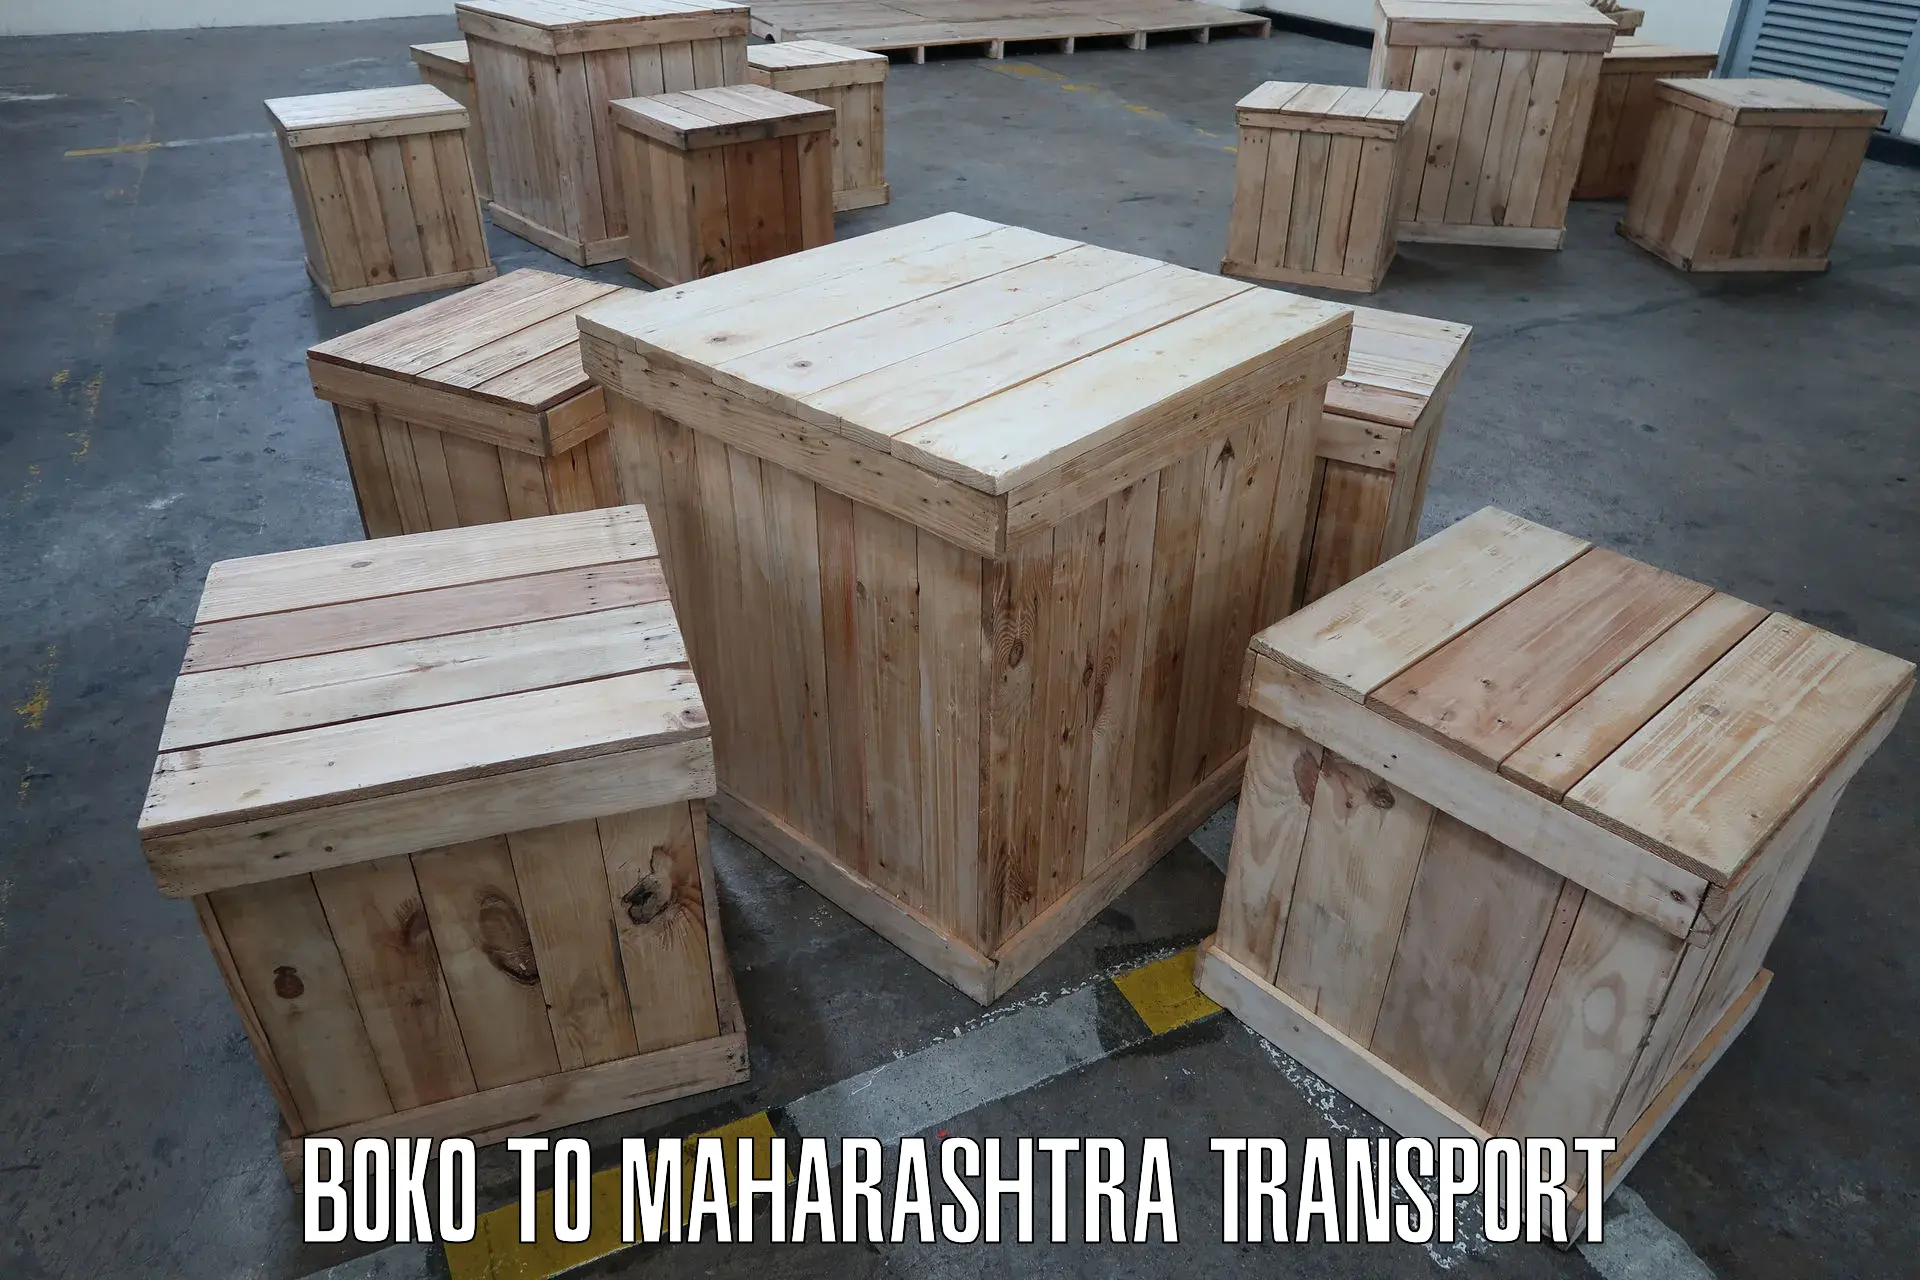 Door to door transport services Boko to Maharashtra